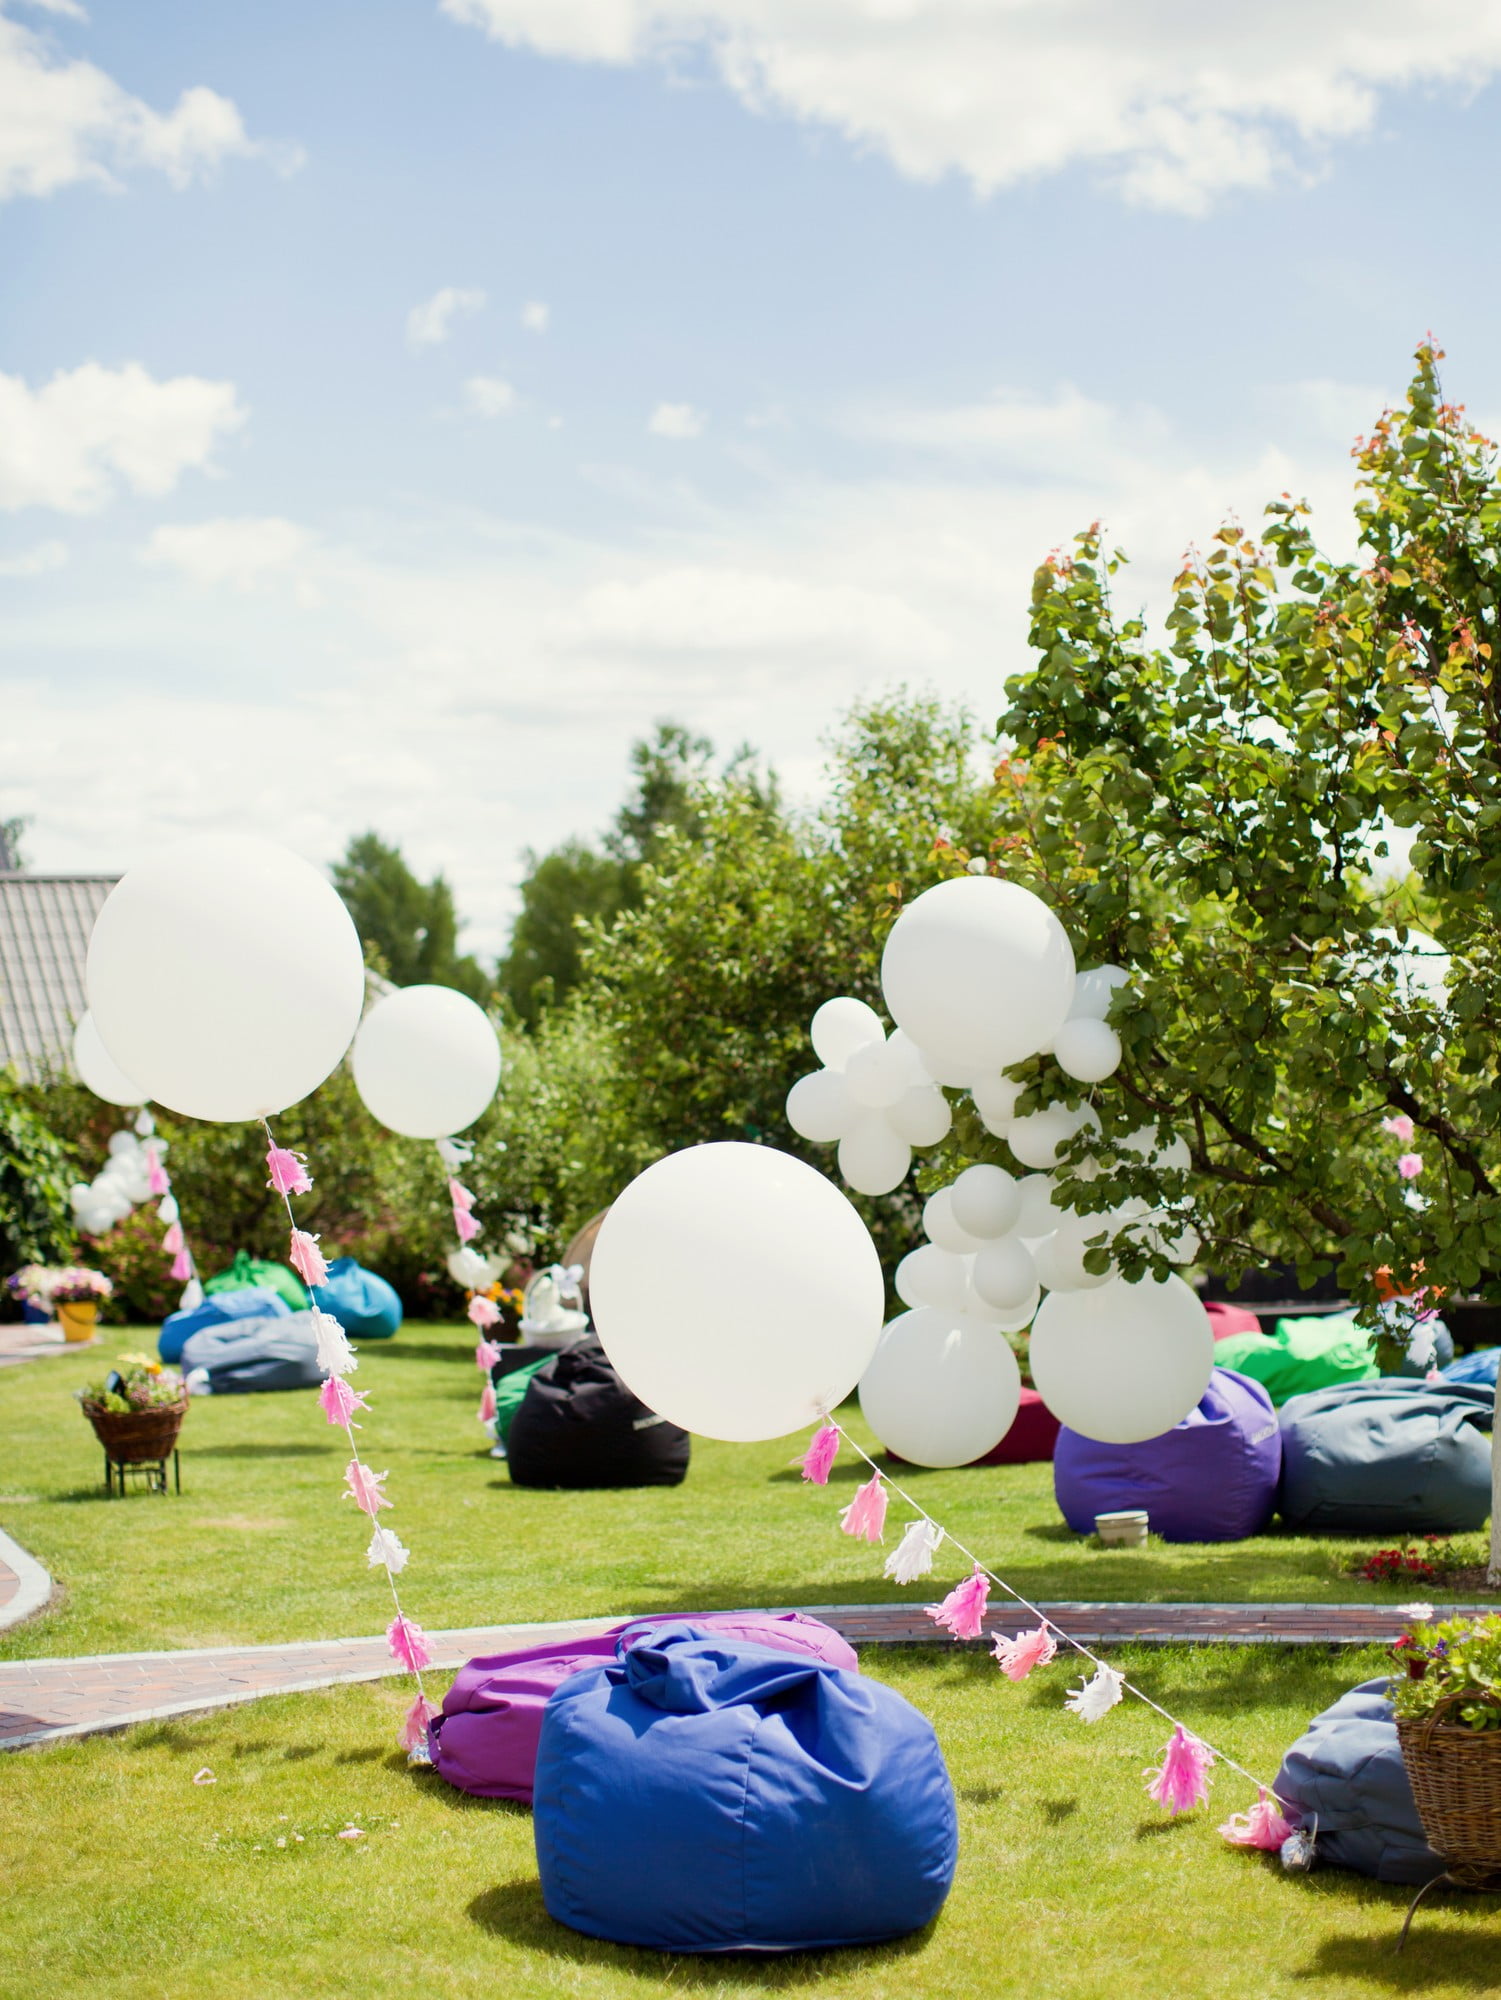 I palloncini renderanno più gioiosa la festa in giardino a prescindere dall'età.